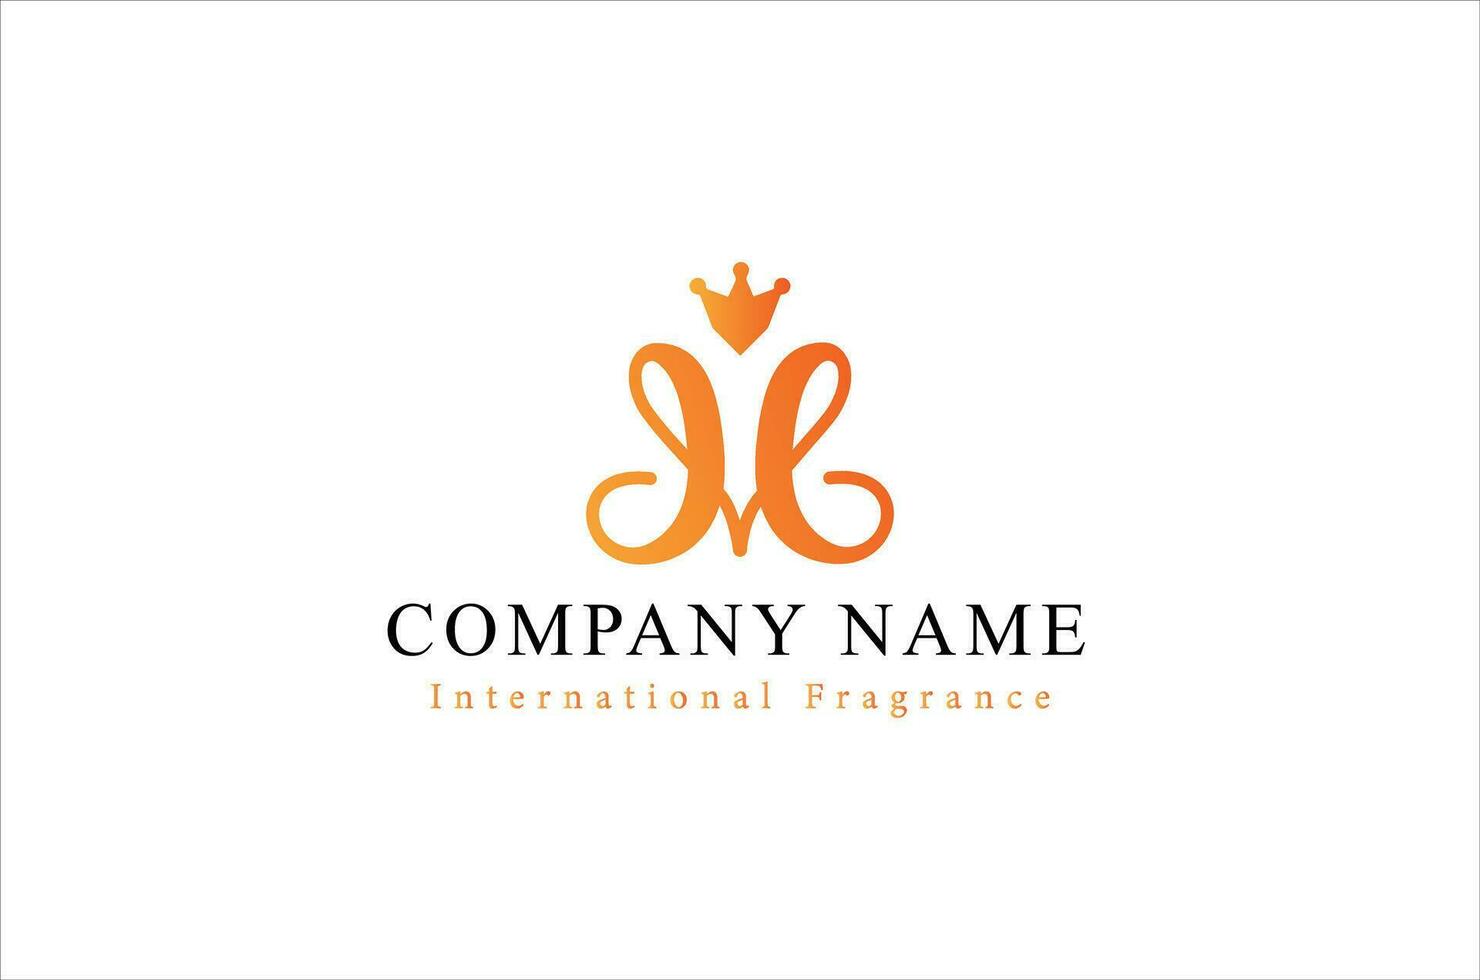 logo identité pour l'image de marque, entreprise, parfum, fasion et luxe marque vecteur